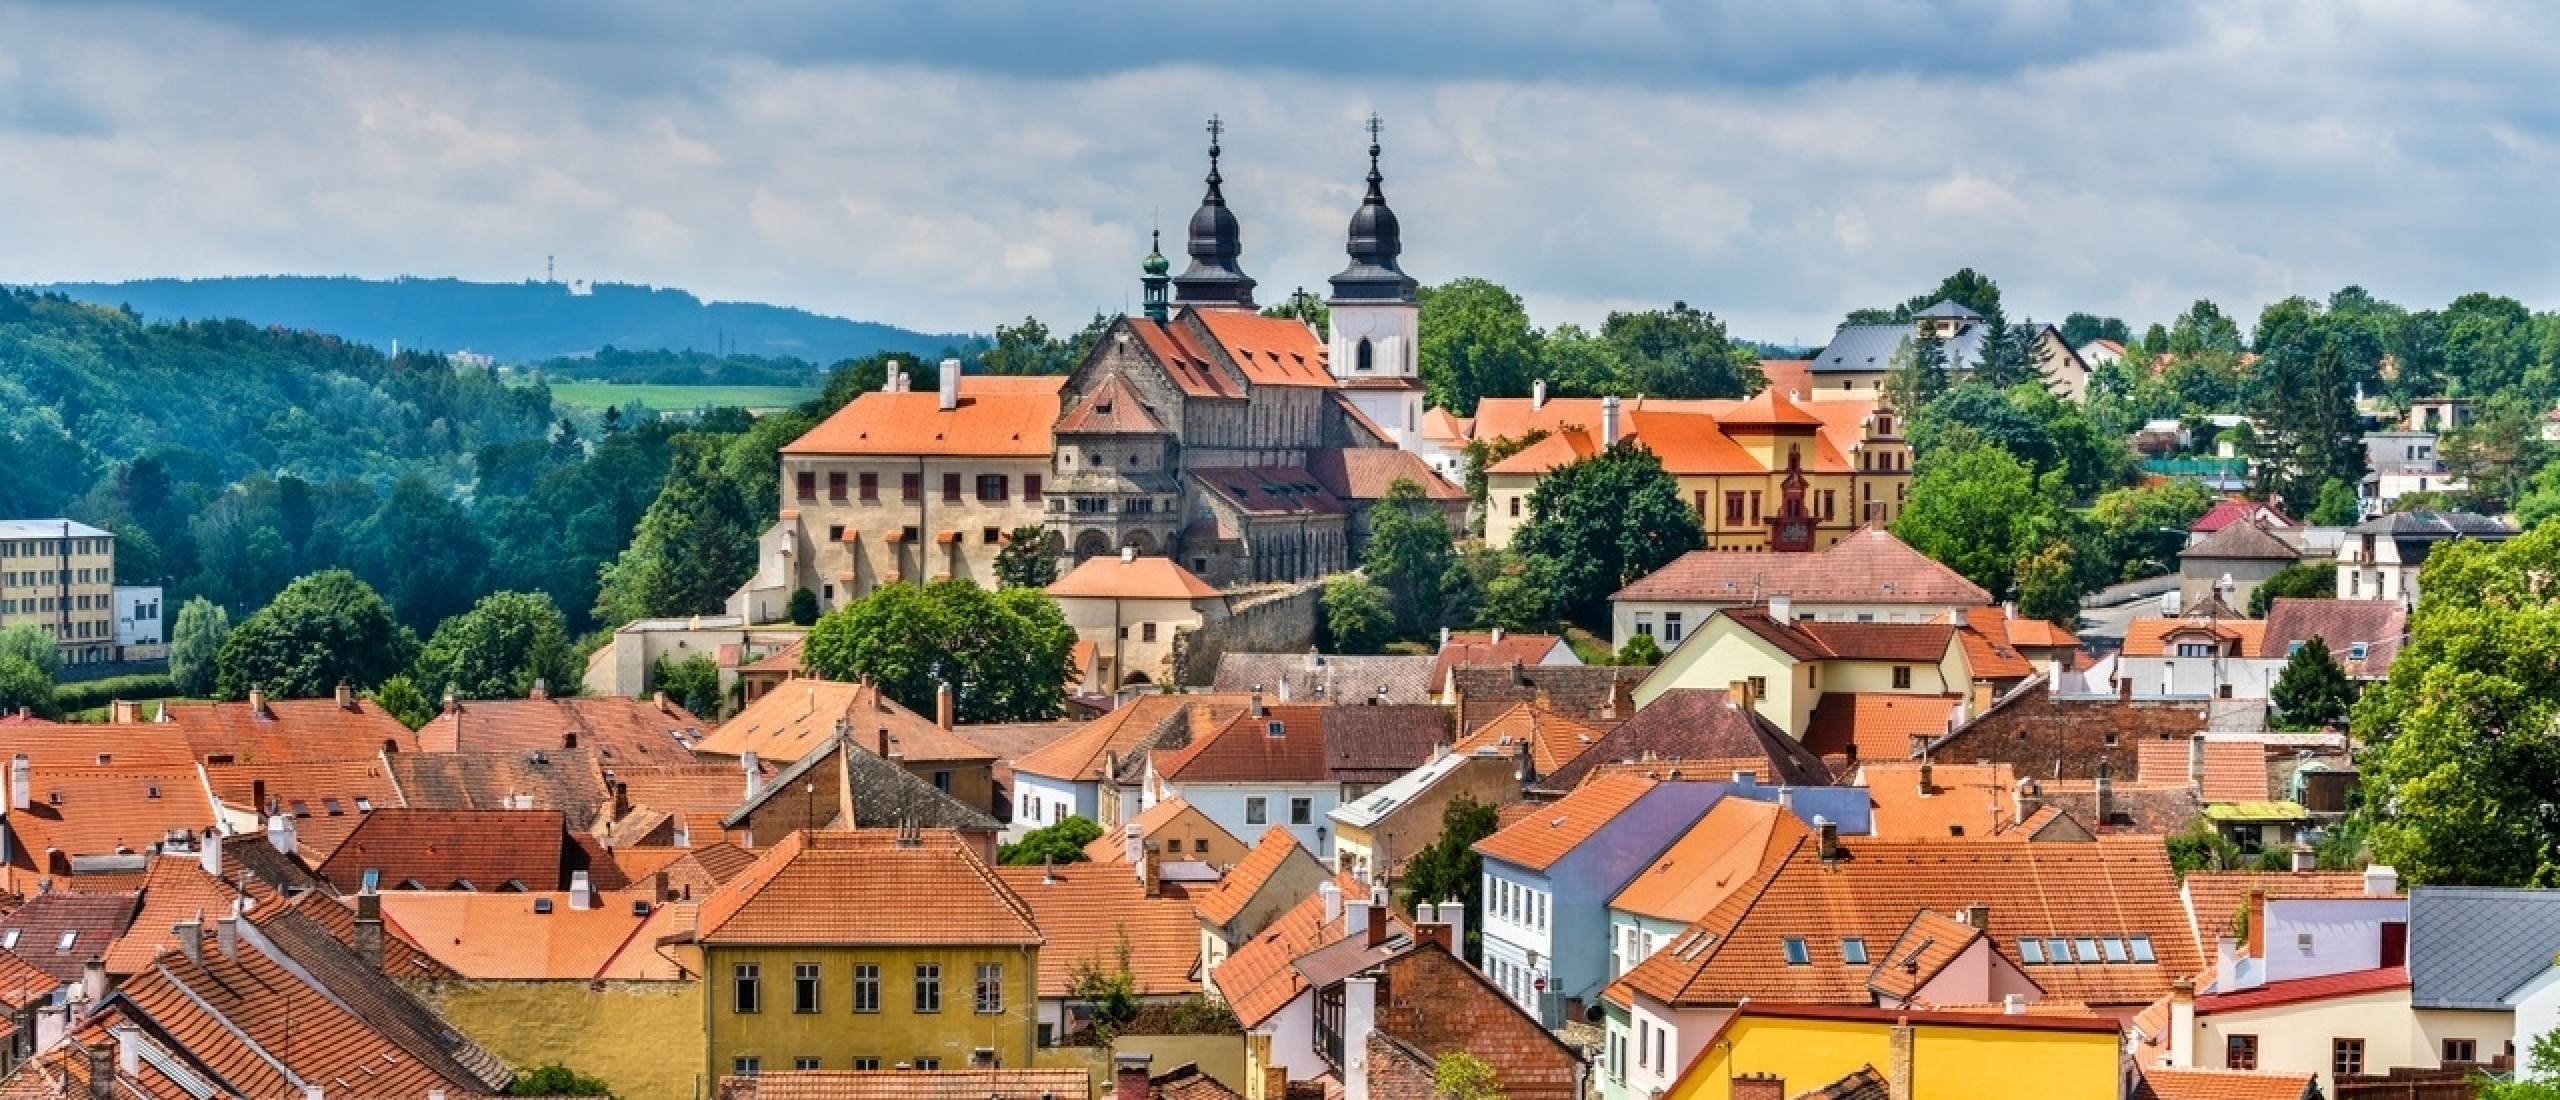 Die historische Stadt Třebíč - Seit 20 Jahren UNESCO-Welterbe!